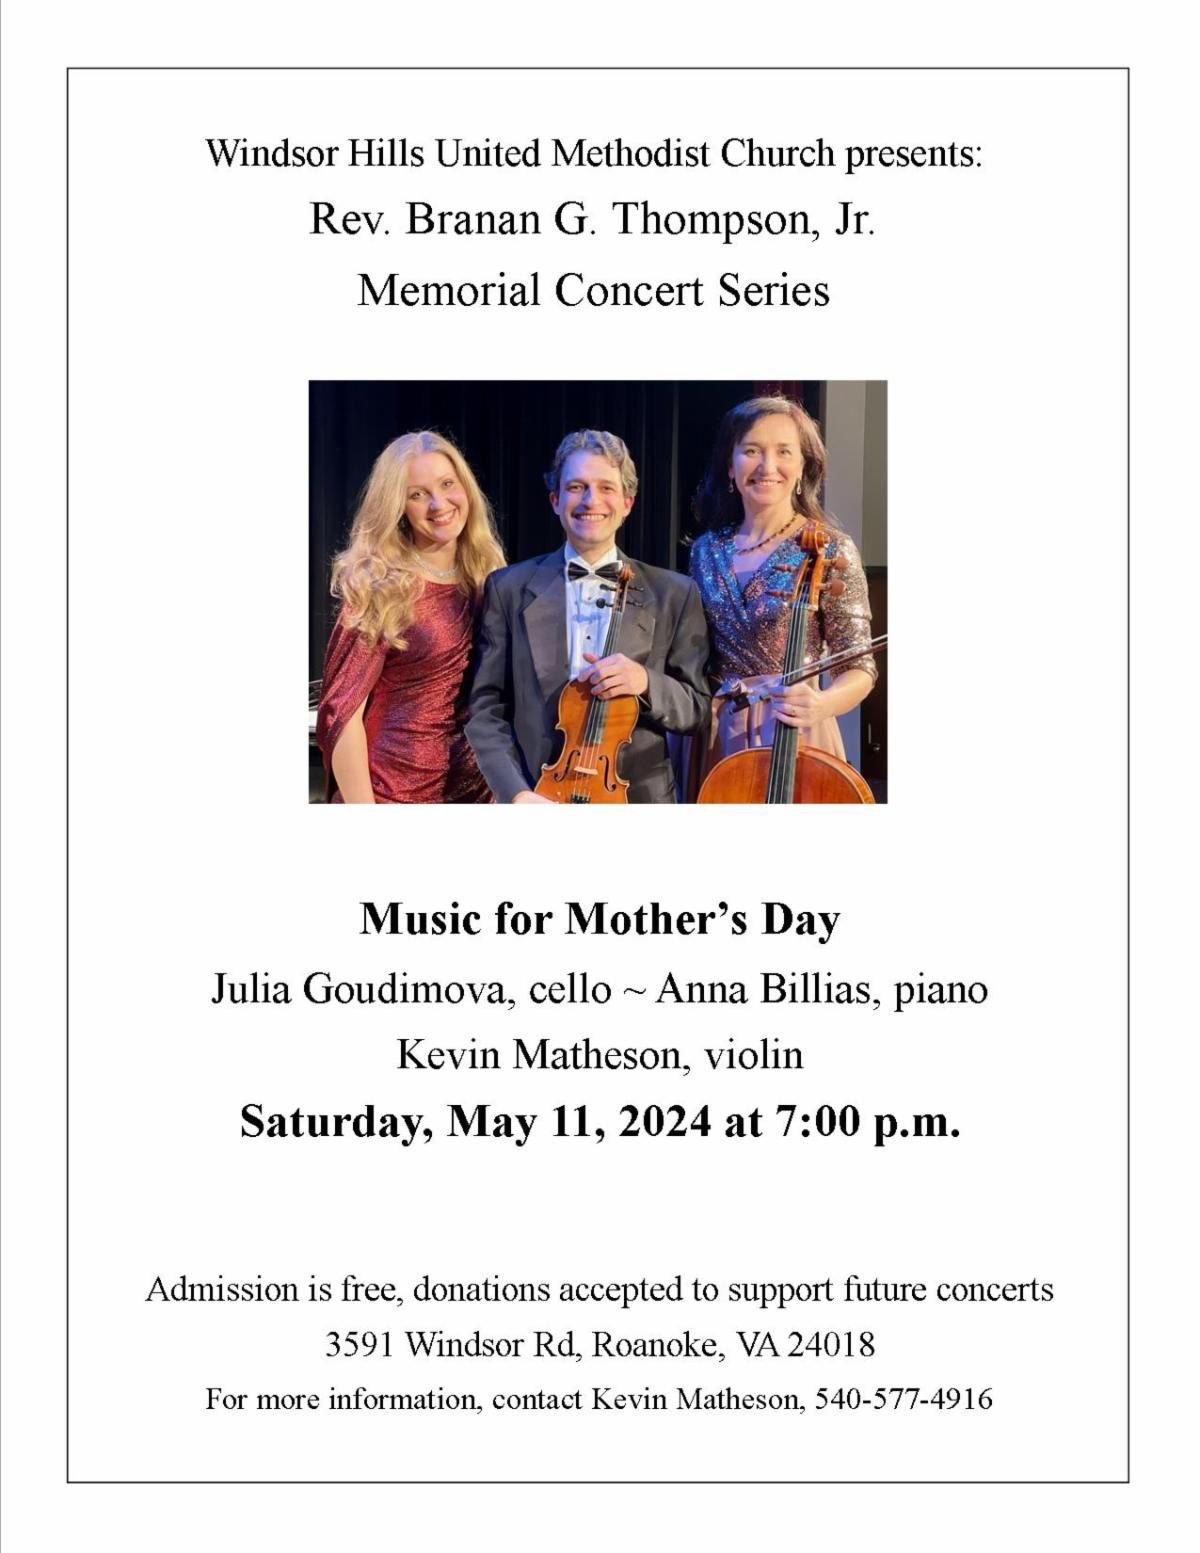 Rev. Branan G. Thompson Jr. Memorial Concert Series: Music for Mother's Day